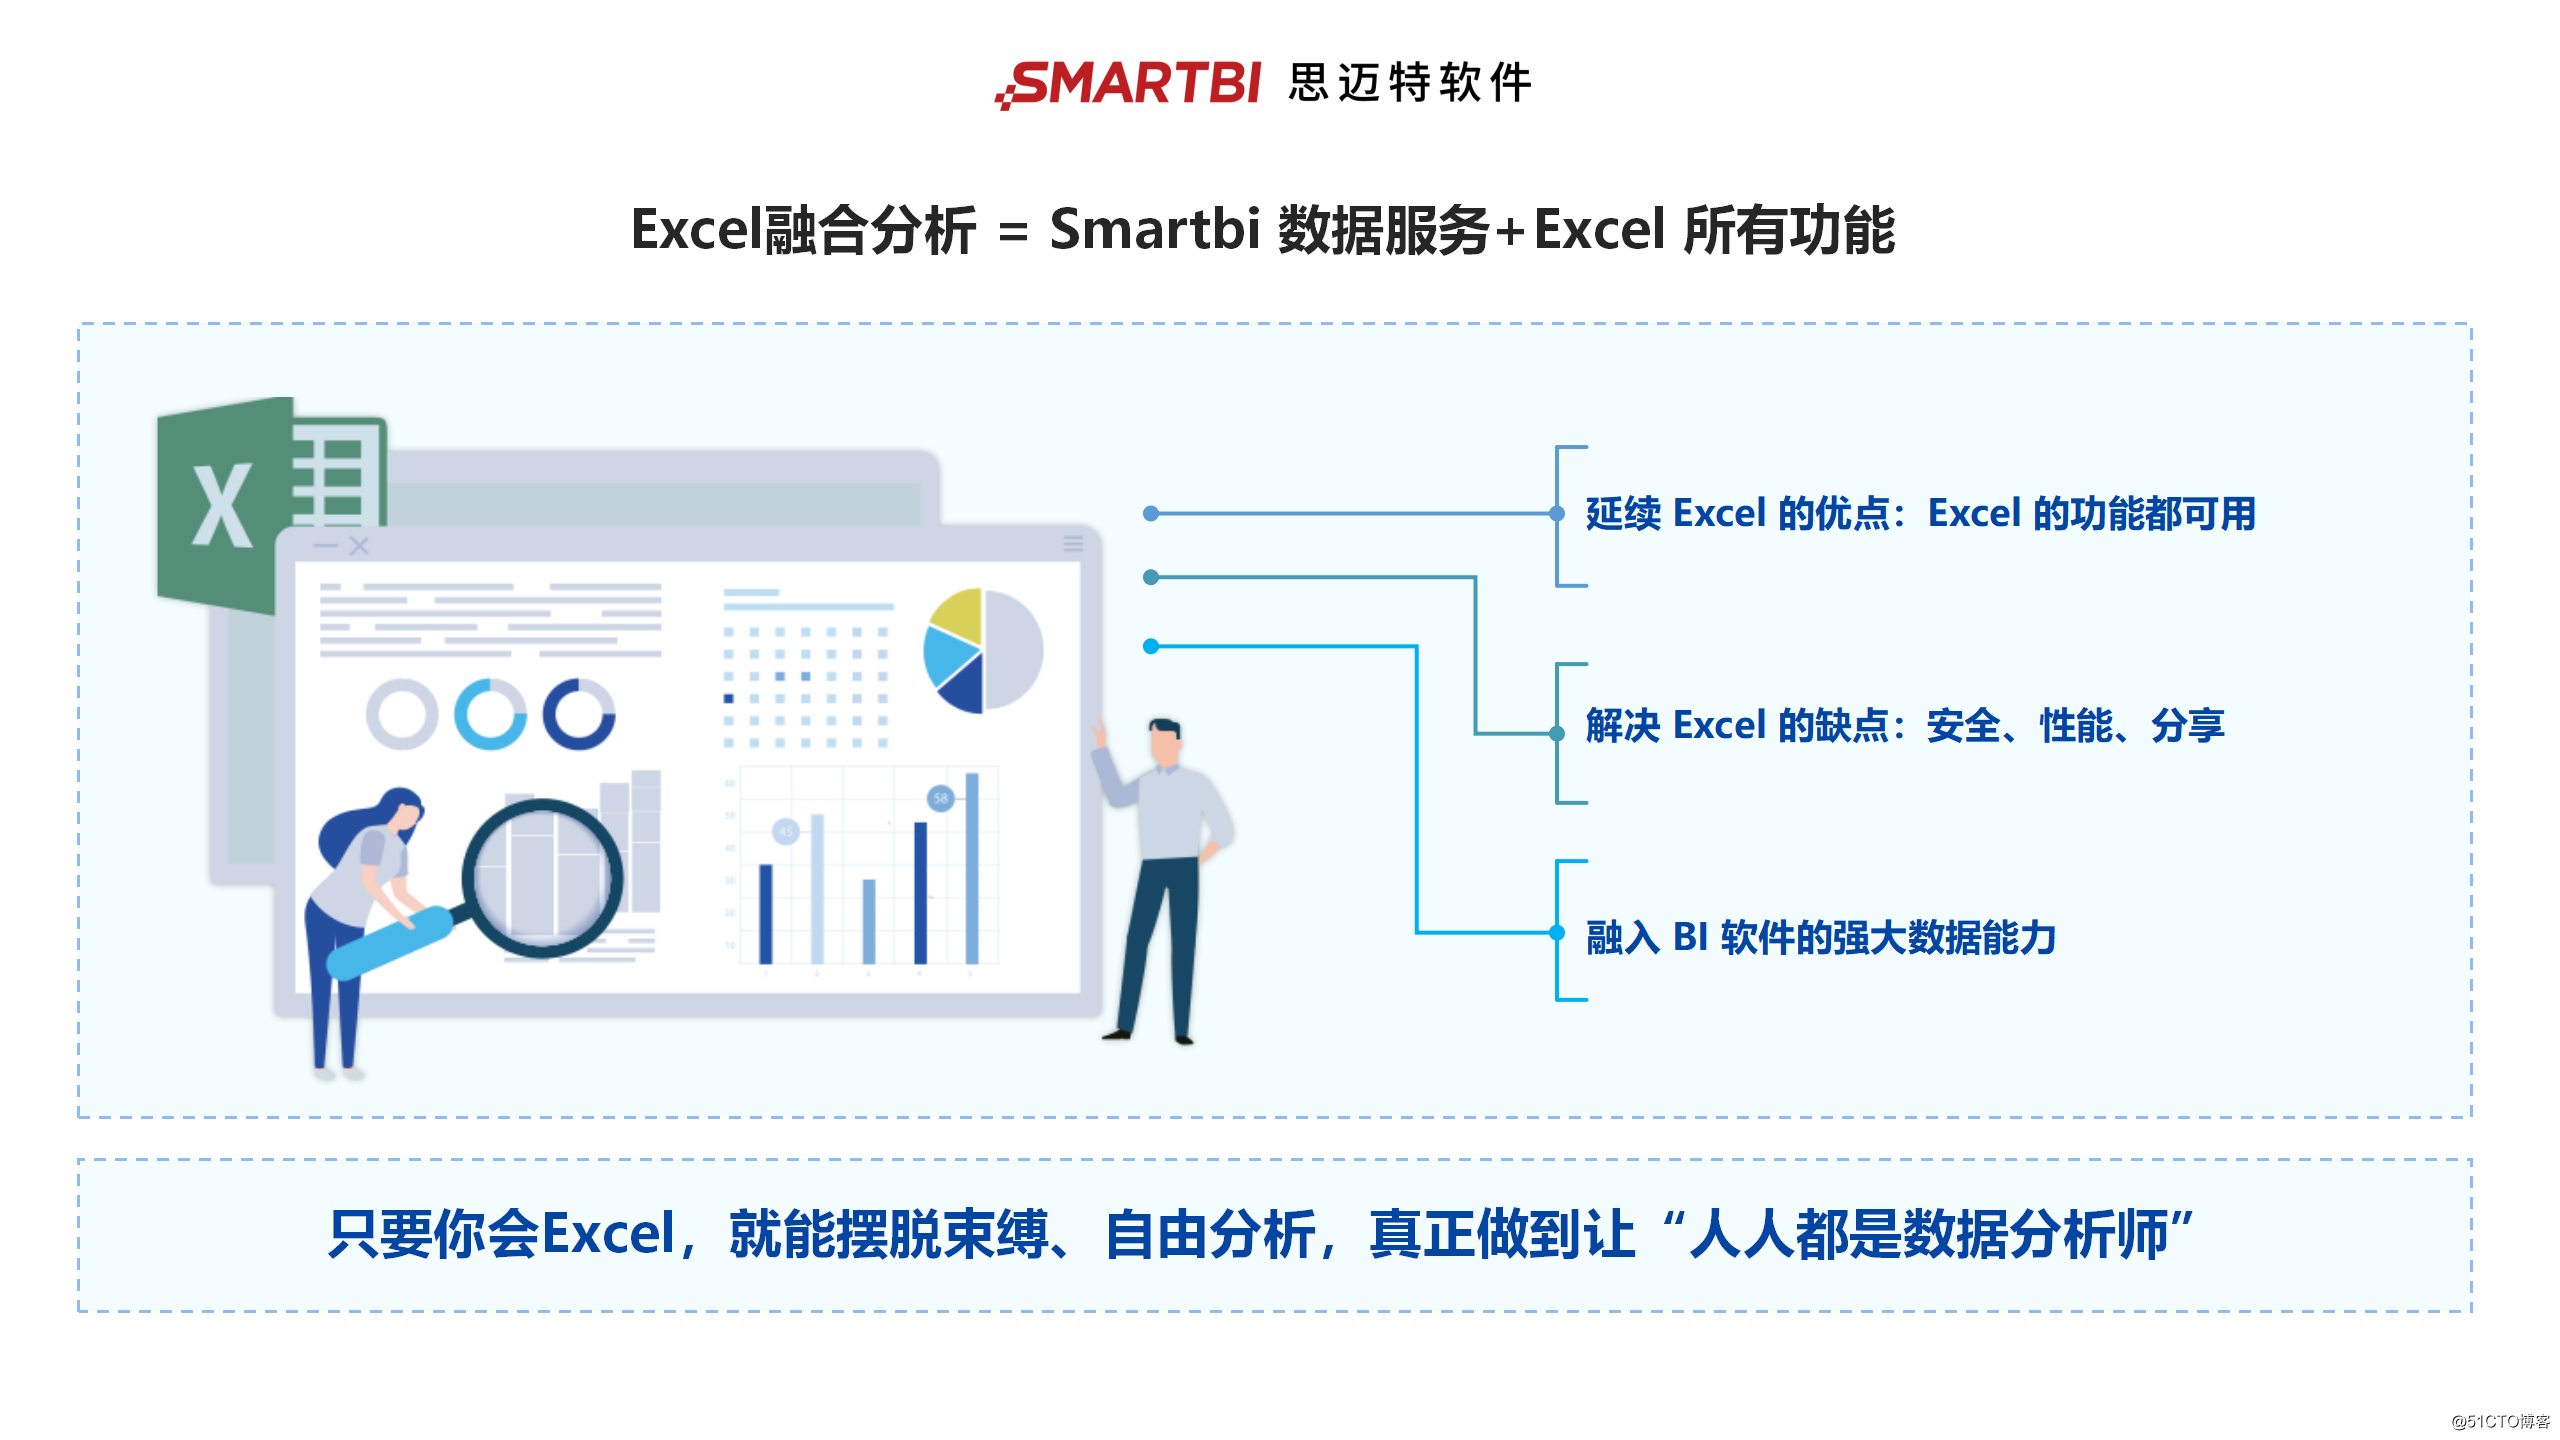 Análisis de integración de Smartbi Excel: integración perfecta de Excel y BI, que realmente empodera a los usuarios de primera línea